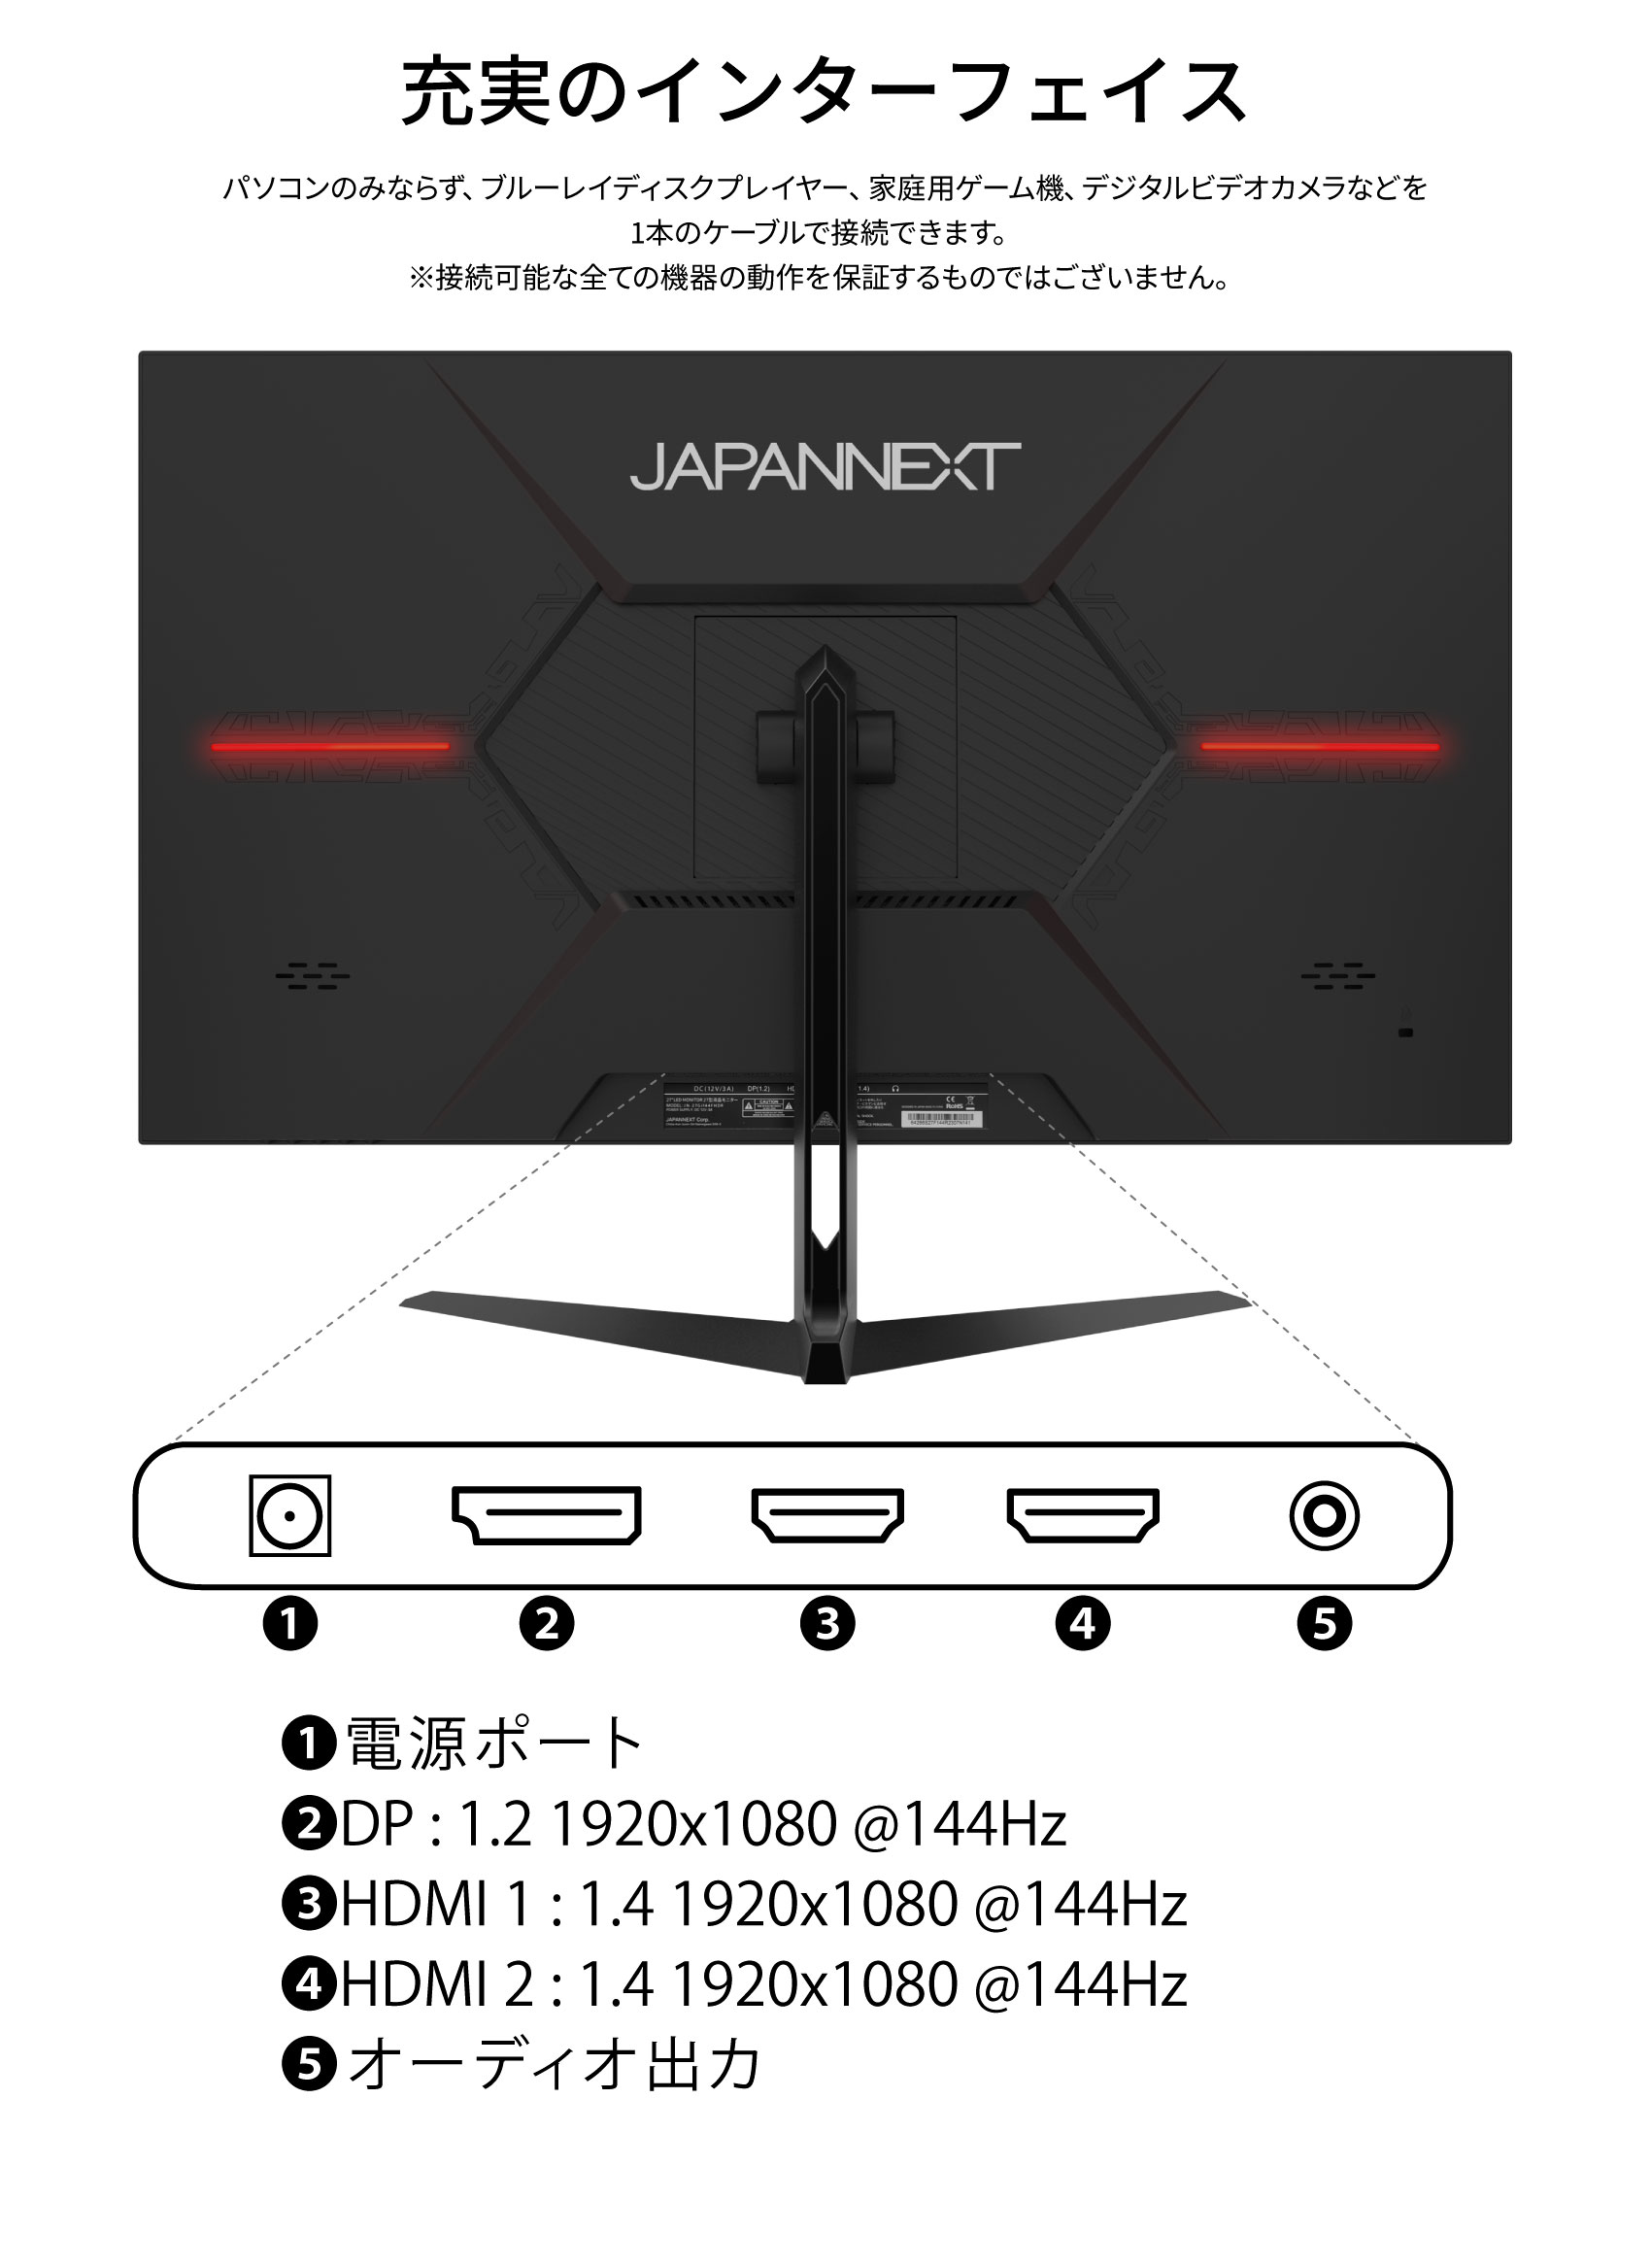 JAPANNEXT 27インチ IPSパネル Full HD(1920 x 1080) 144Hz 液晶